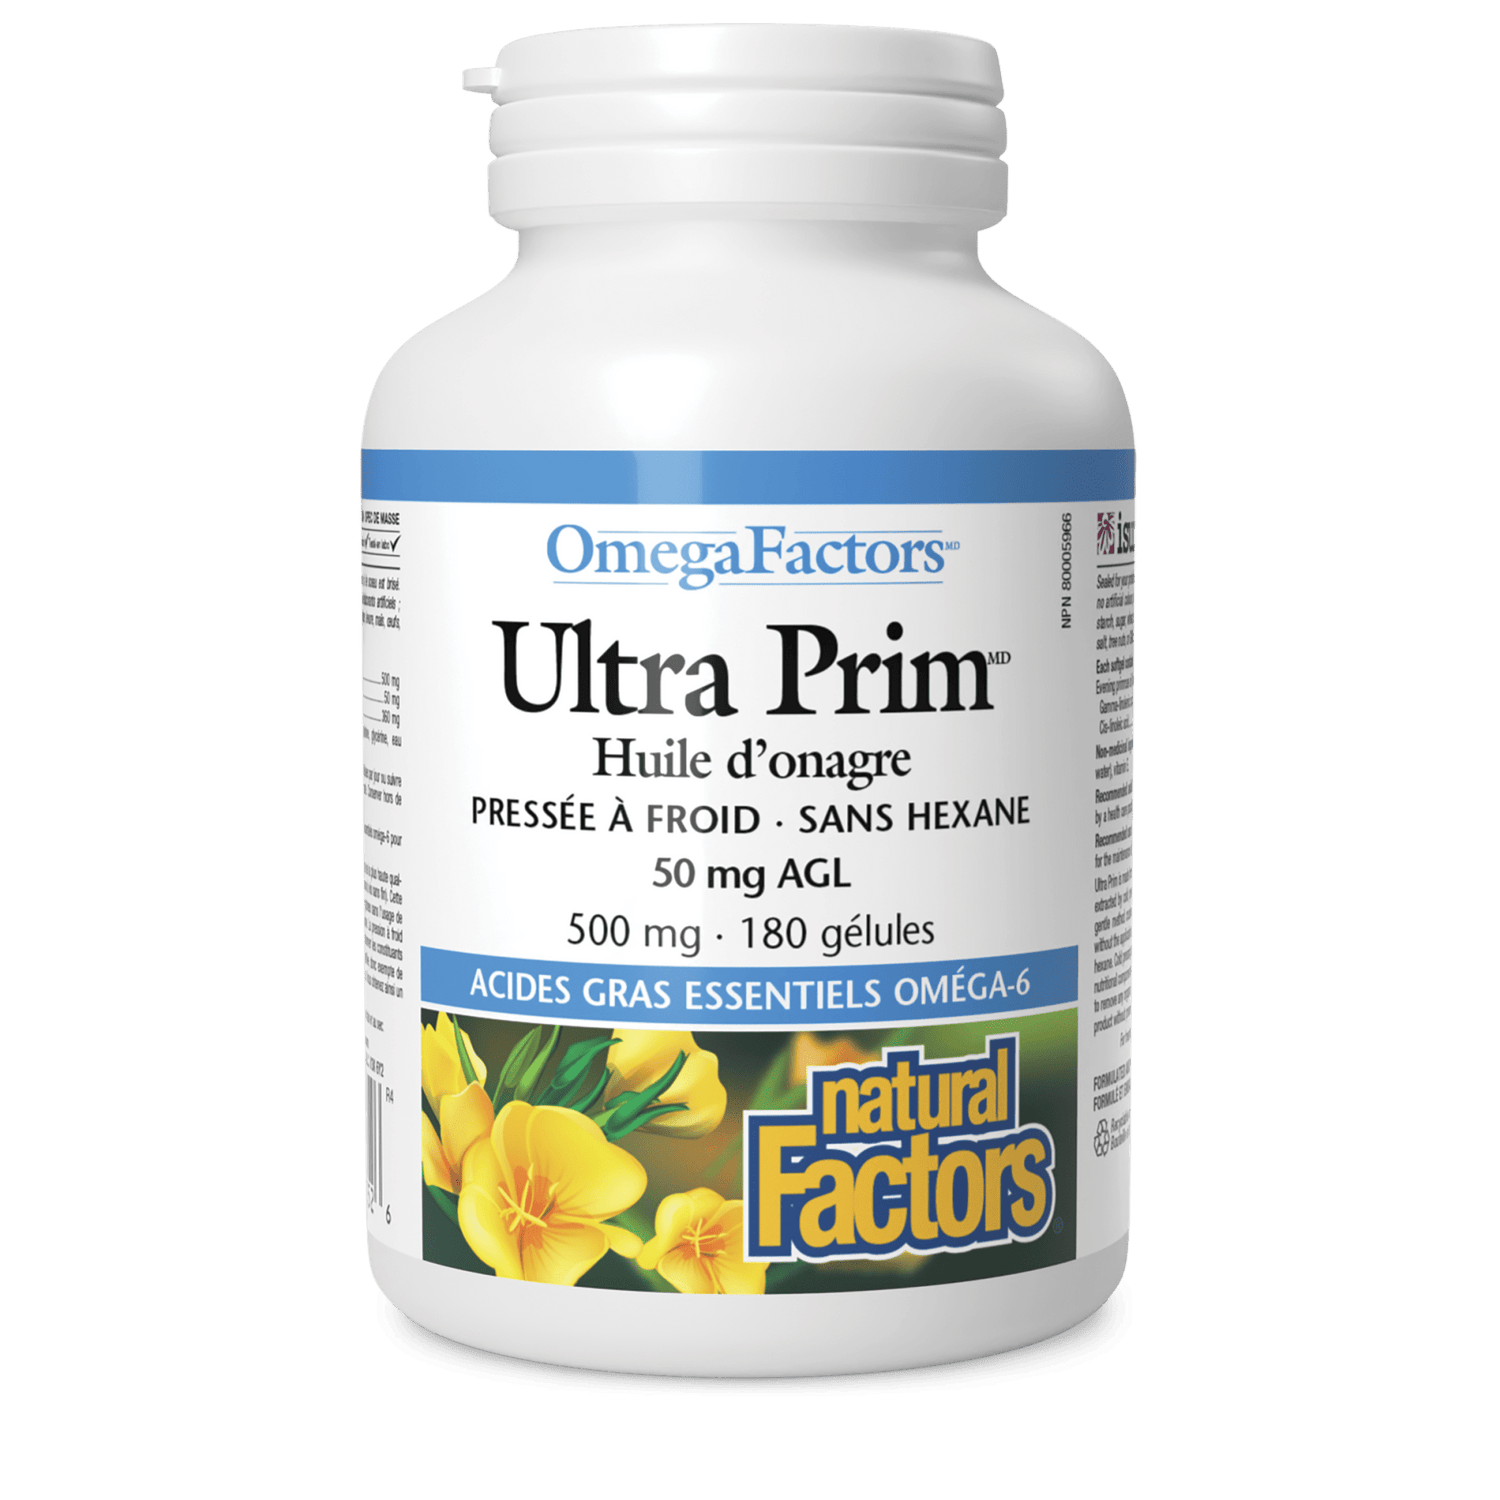 Ultra Prim Huile d’onagre 500 mg, OmegaFactors, Natural Factors|v|image|2352